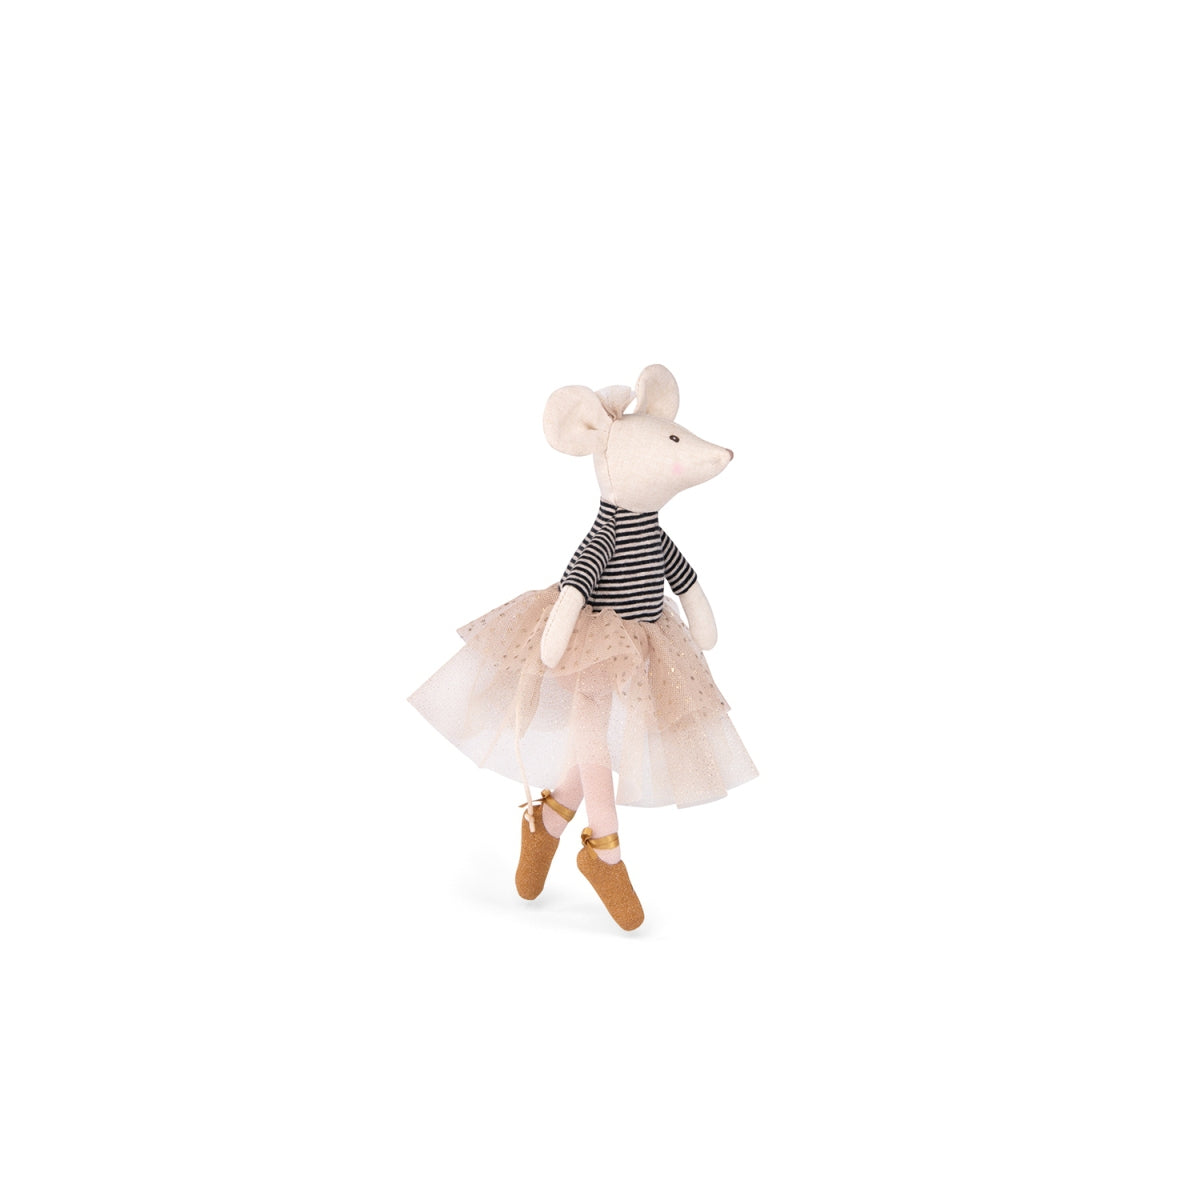 MOULIN ROTY Ballerina Maus Suzie aus der kleinen Tanzschule. Die zauberhafte Moulin Roty Spielpuppe (26cm) trägt ein Tütü und ein Ringelshirt. Hier und da glitzert das Gewand. Ein zauberhaftes Geschenk für kleine Mädchen.